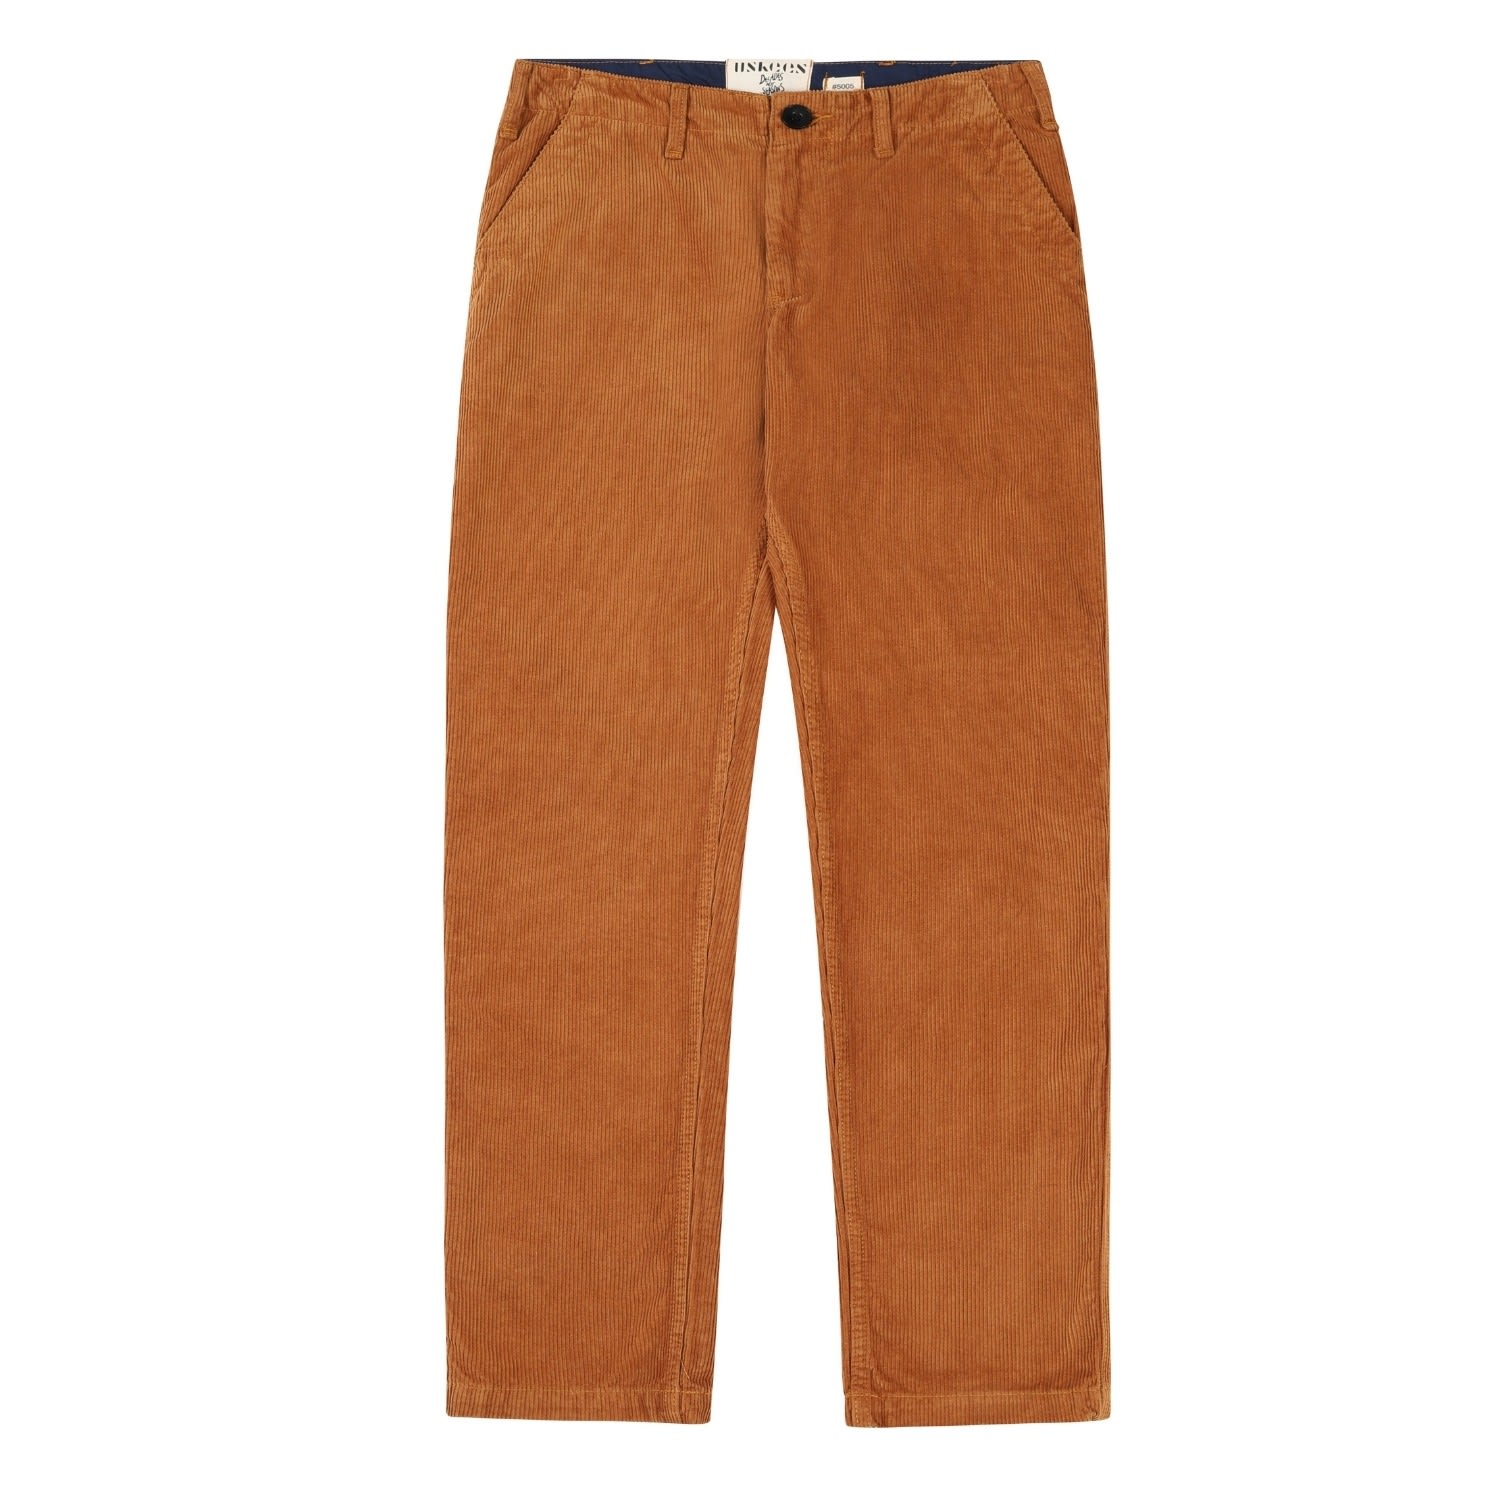 Uskees Men's Brown 5005 Cord Workwear Pants - Tan